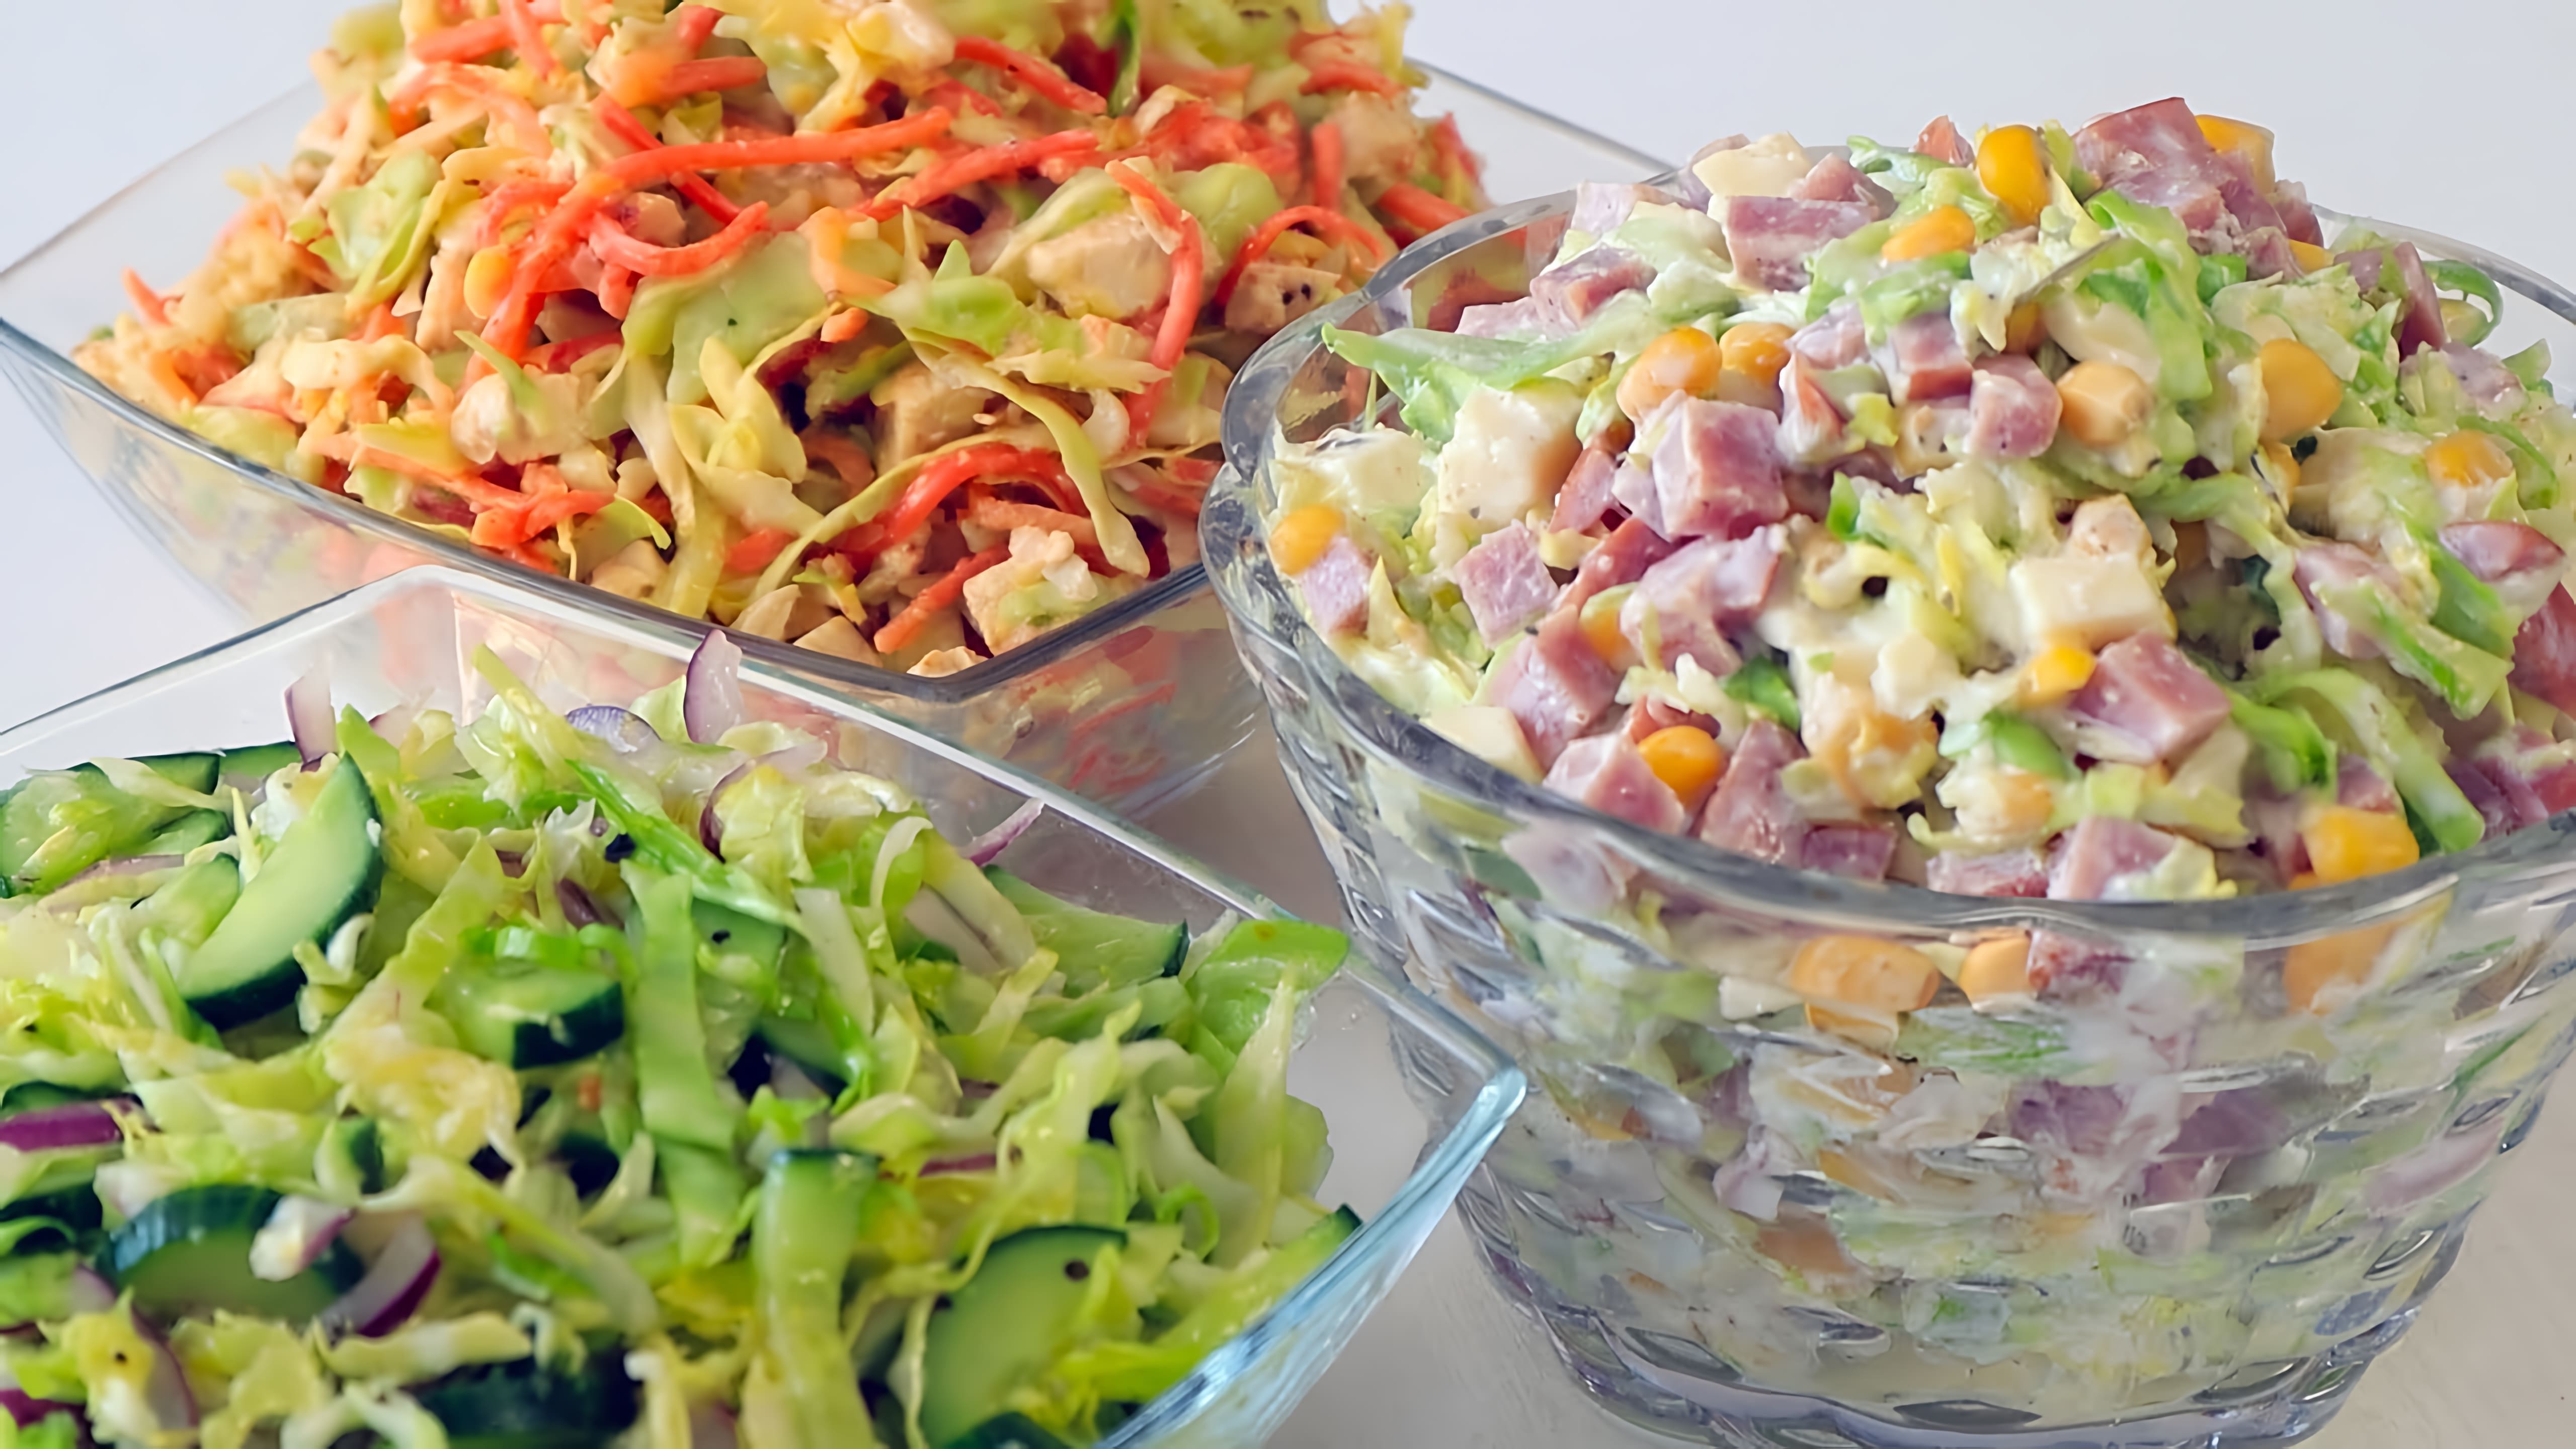 В этом видео демонстрируются три оригинальных салата из капусты, которые можно приготовить на каждый день или на праздник